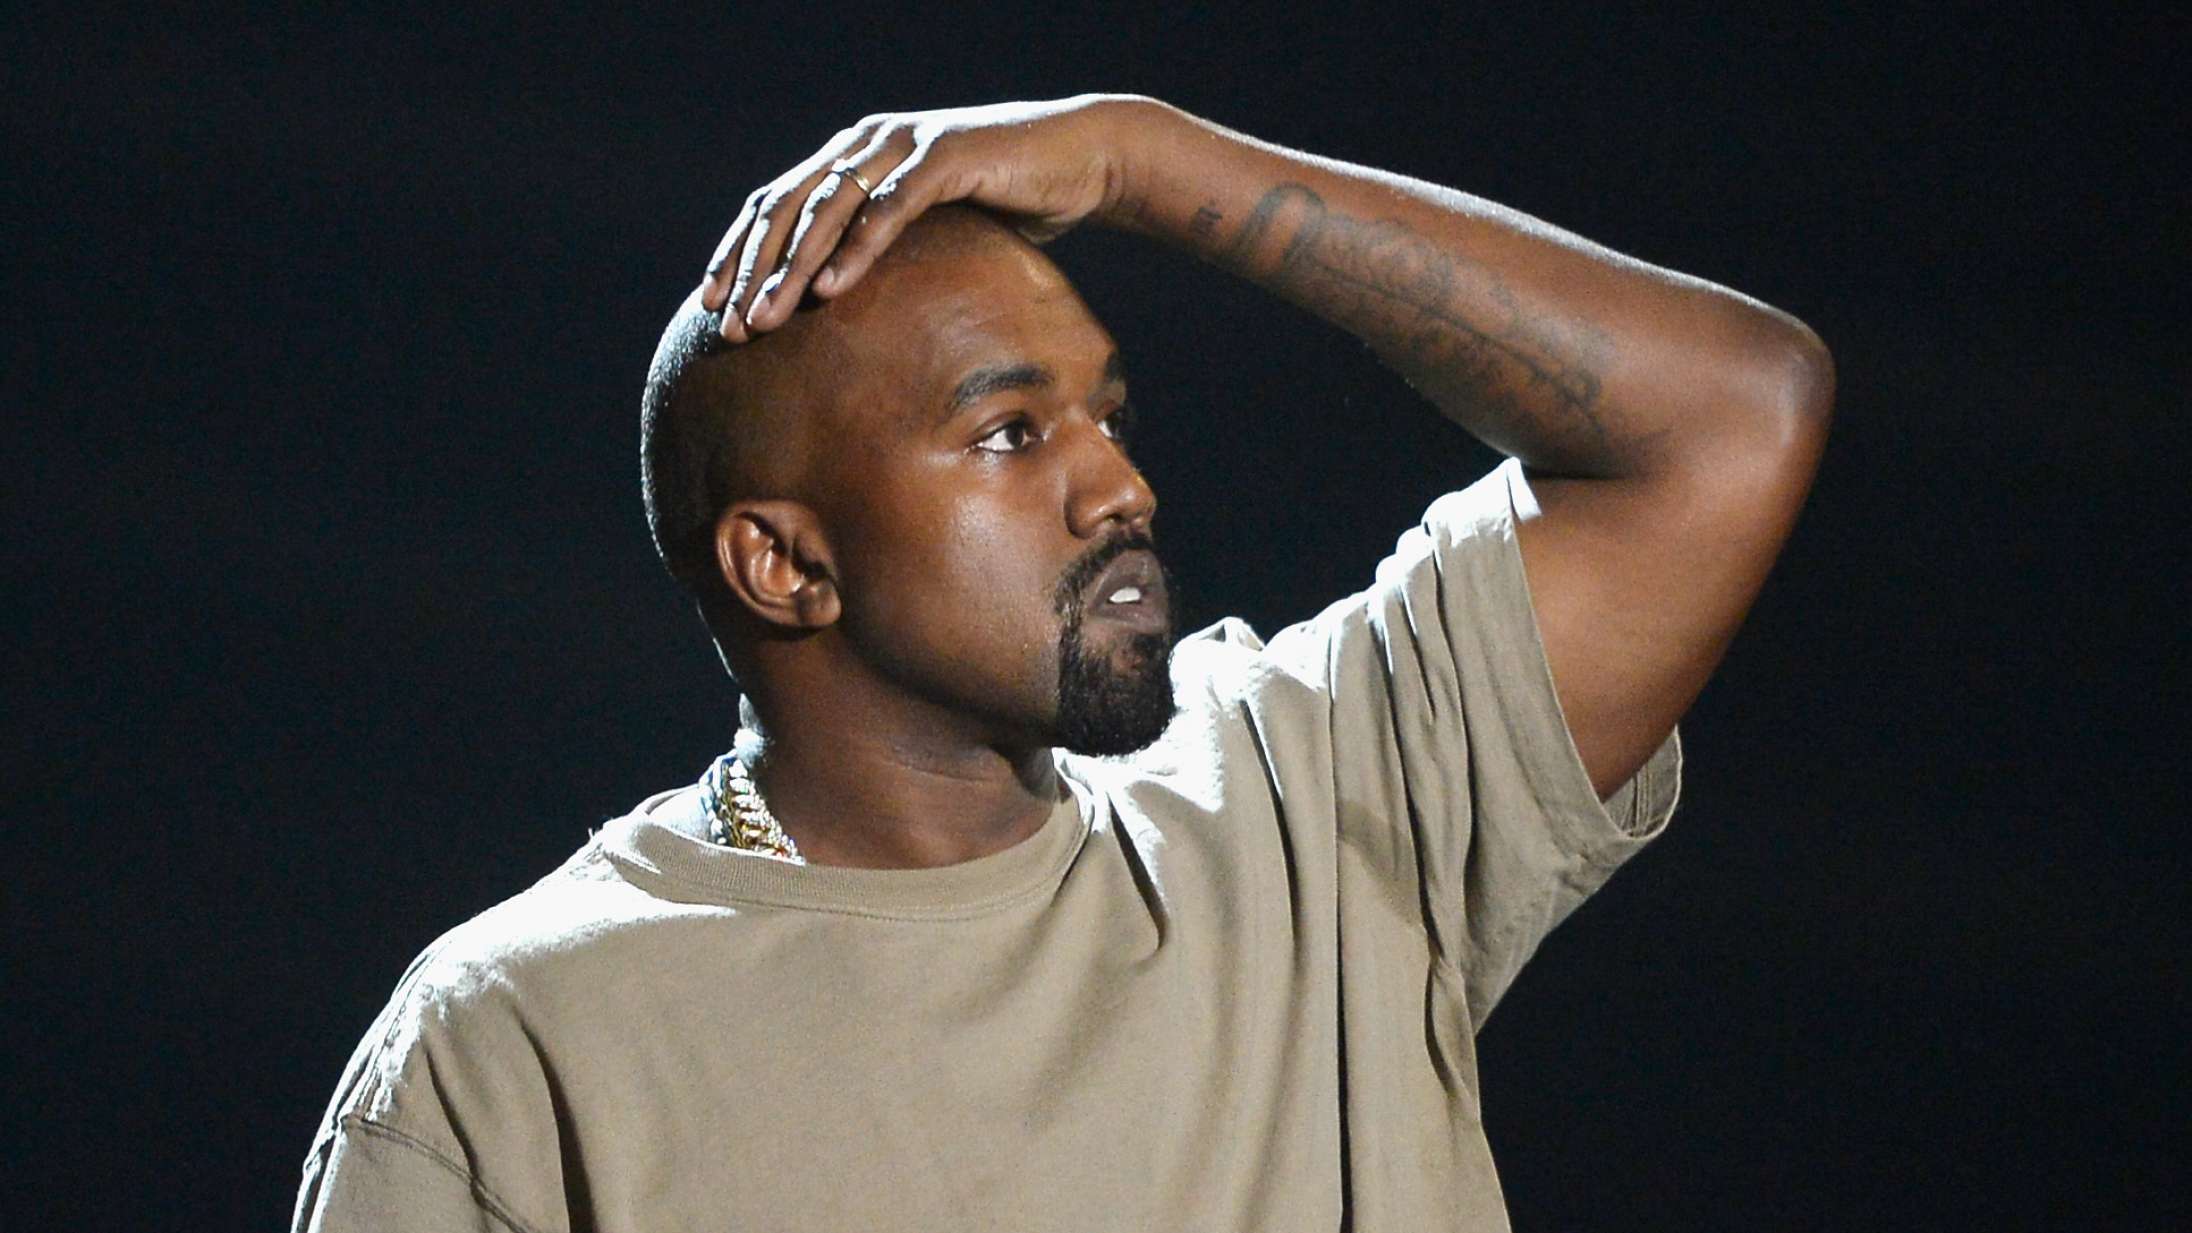 Tusindvis kræver Kanye West fjernet fra årets Coachella-program